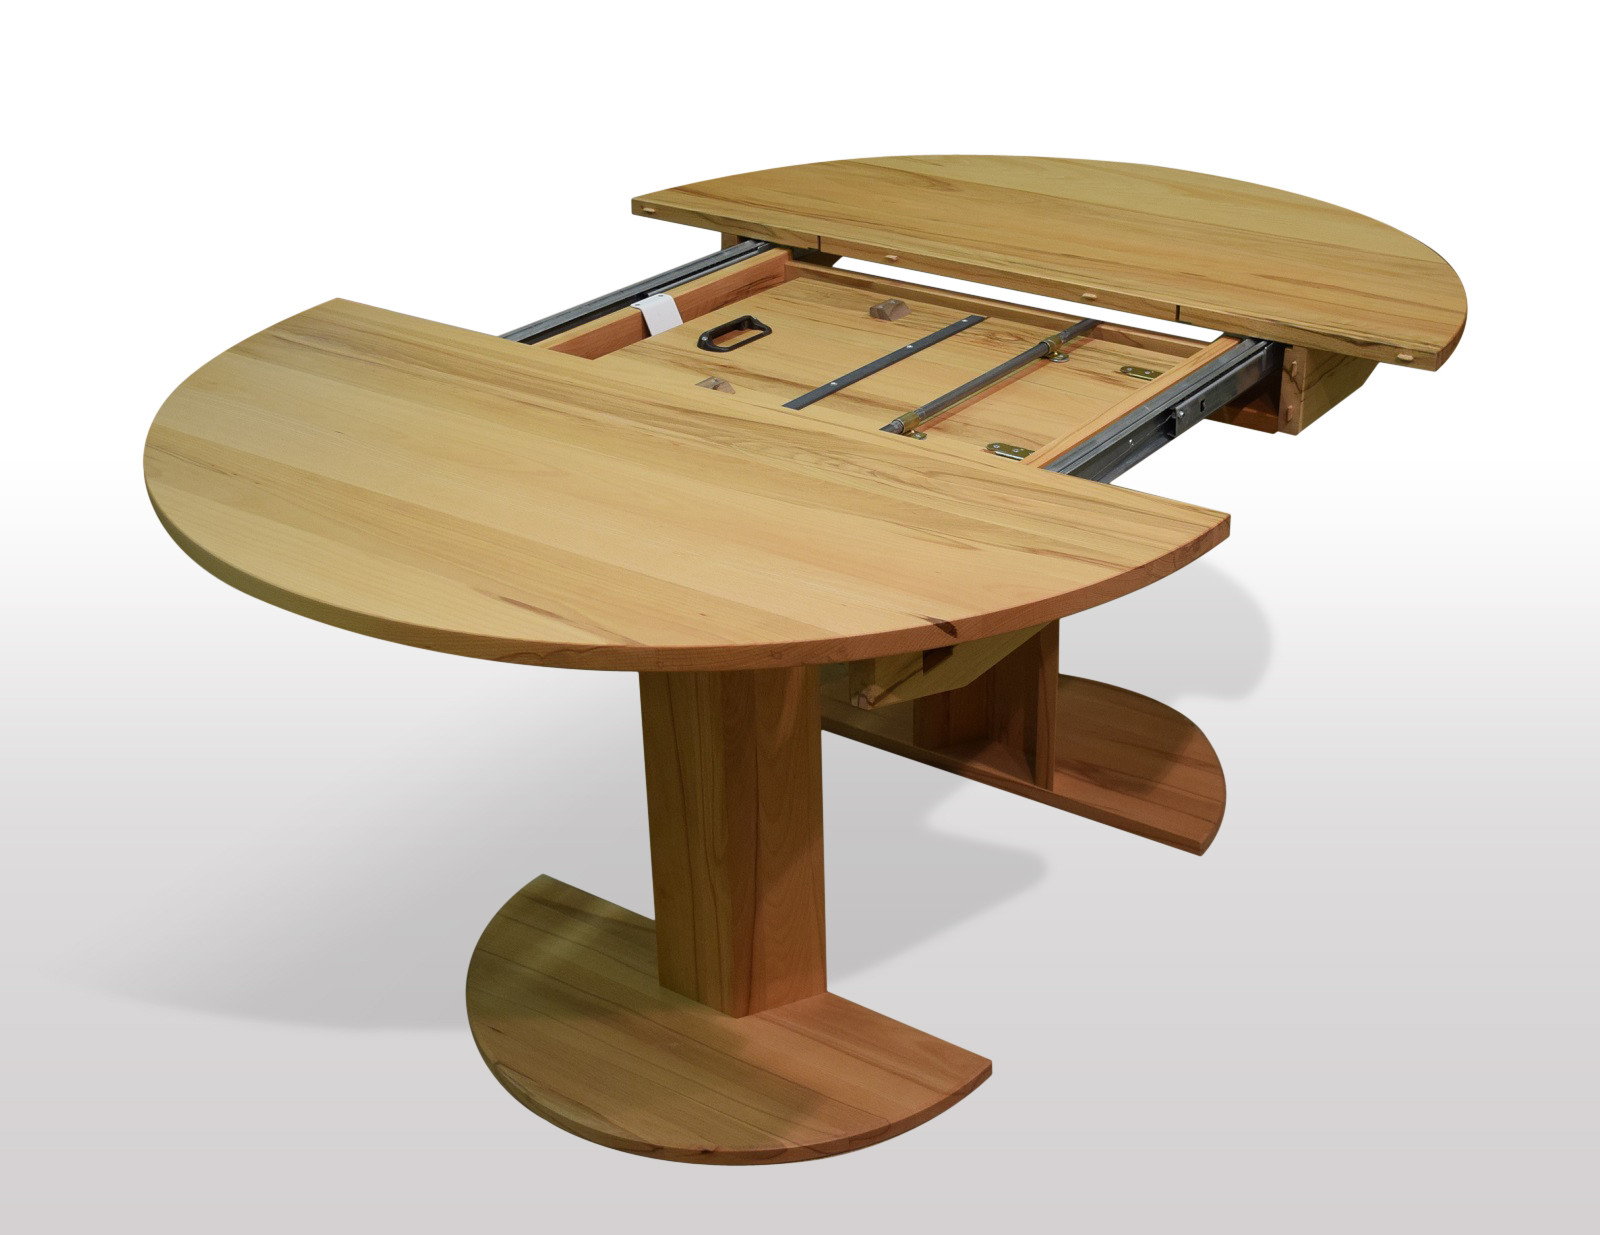 Tisch Rund Ausziehbar
 Runder Gummibaum Tisch in 130cm Durchmesser